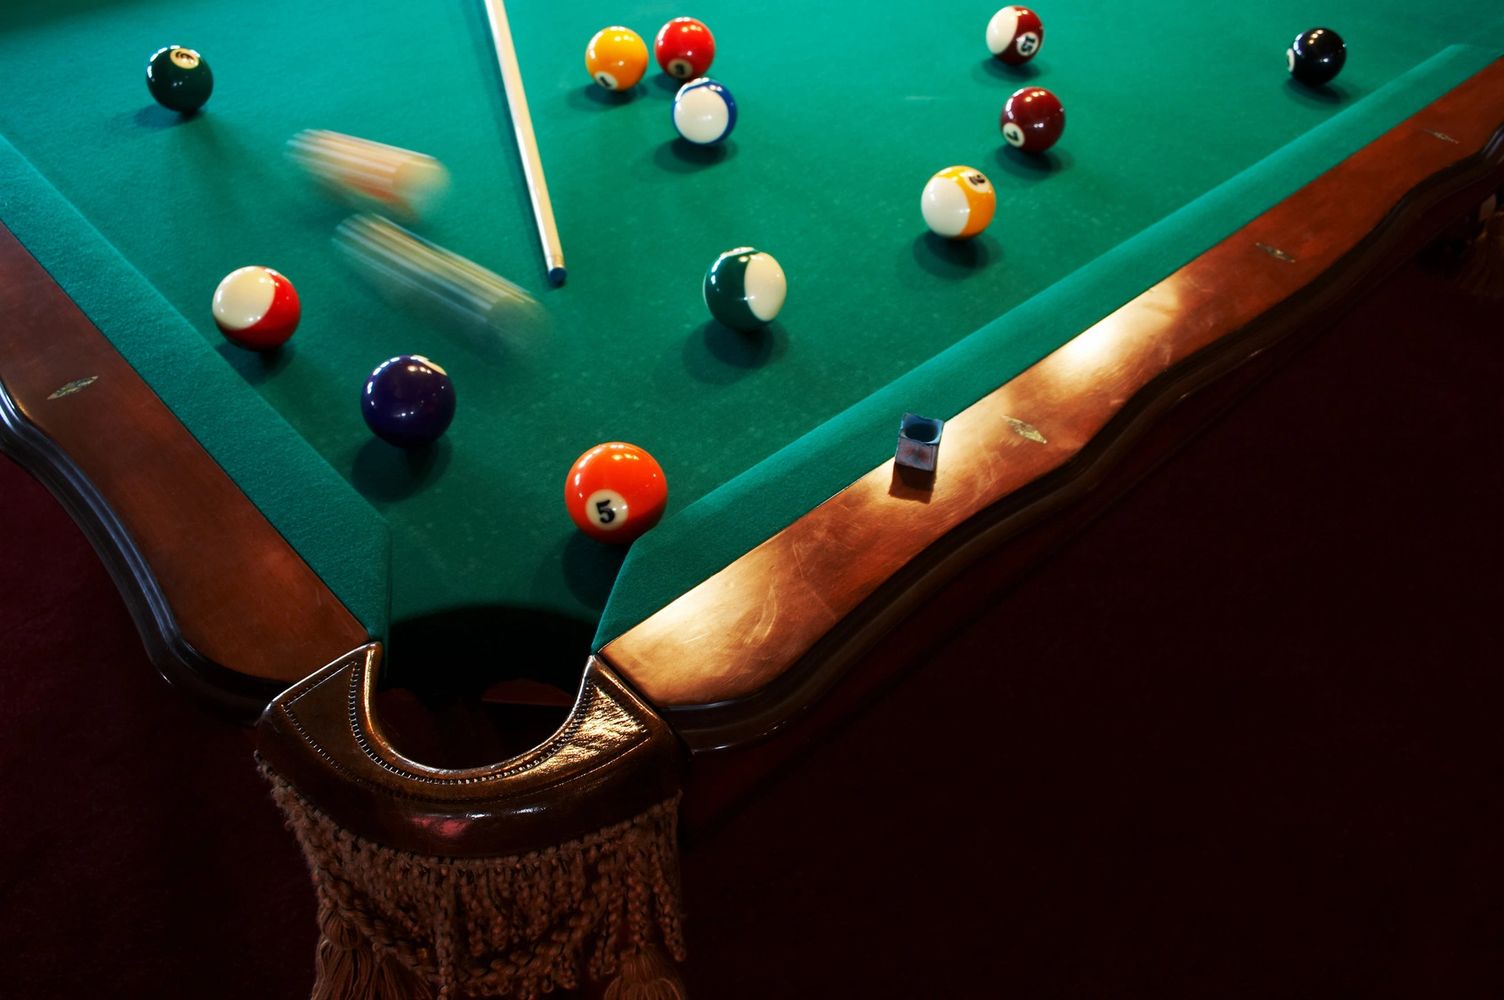 Sunnysgameroom - Pool Table, Refelting, Pool Table Movers